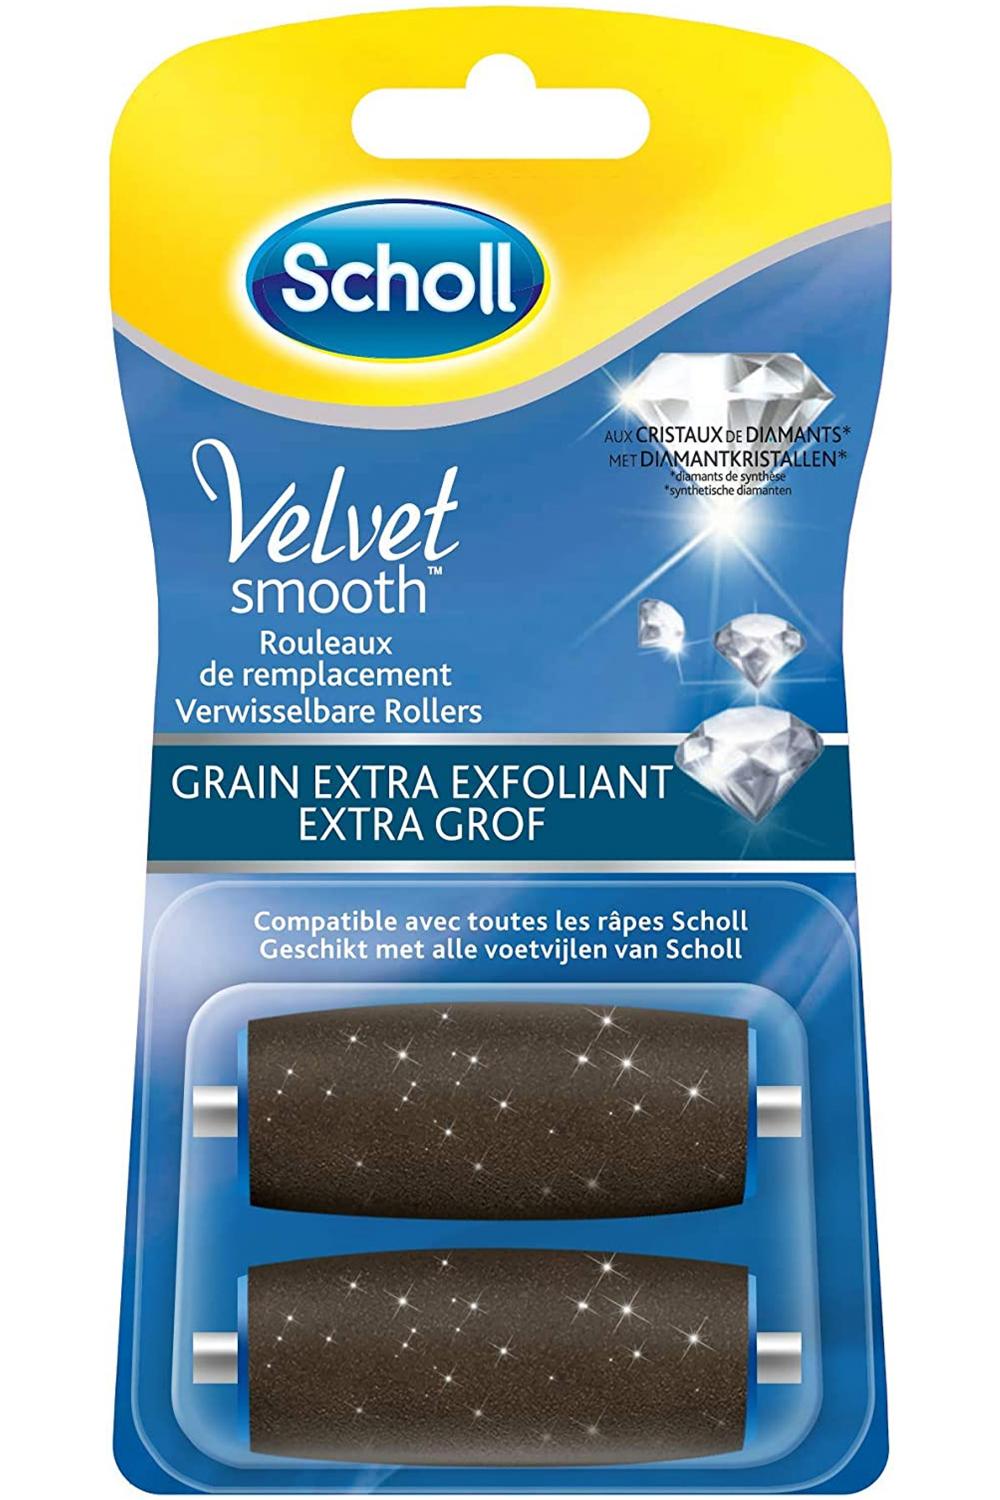 Velvet Smooth Rouleaux de remplacement Grain extra exfoliant Scholl - 2 rouleaux de remplacement